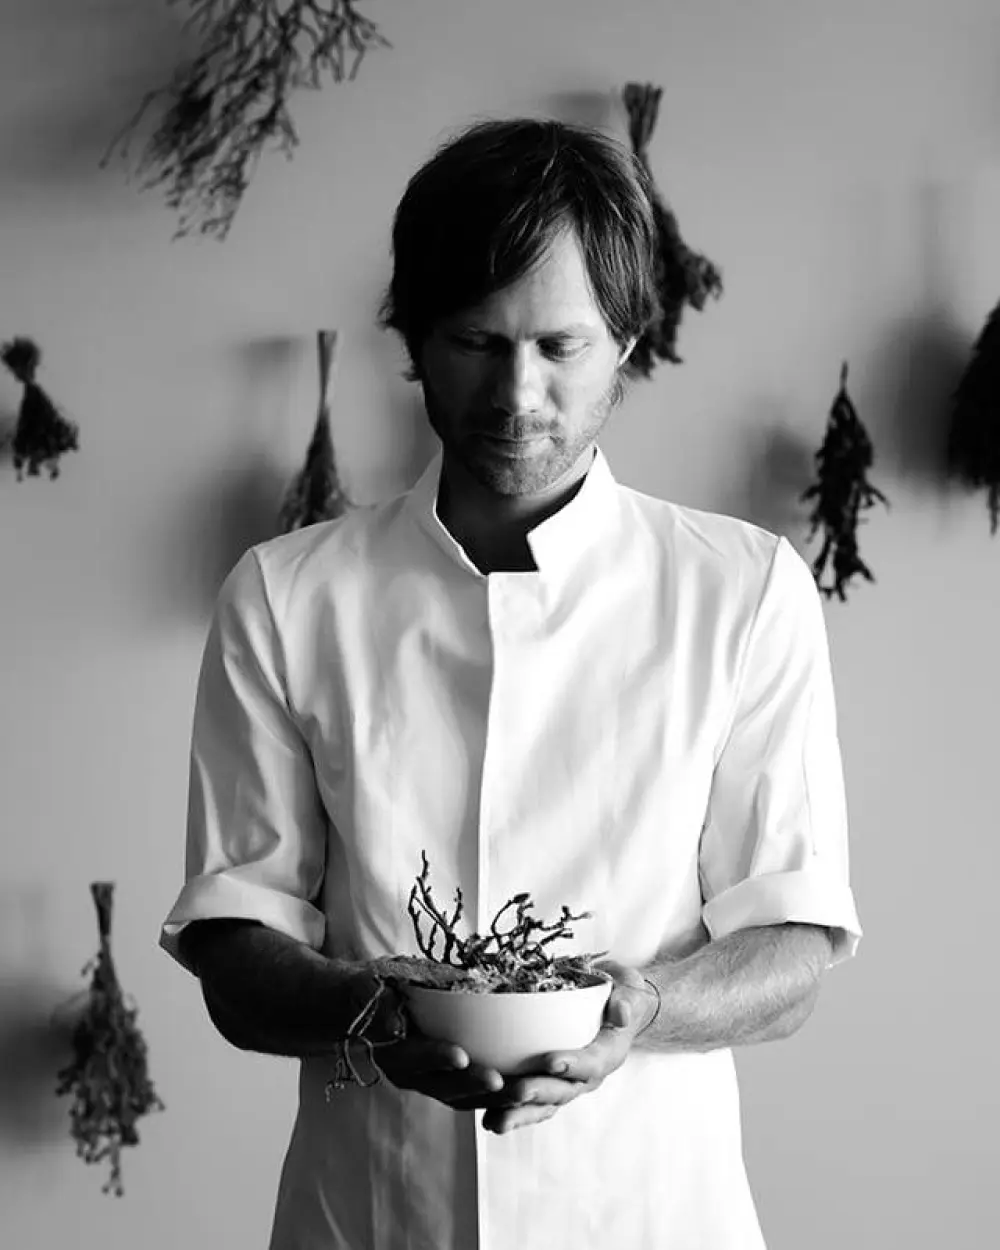 Chef Rasmus Kofoed | Dona arquiteta